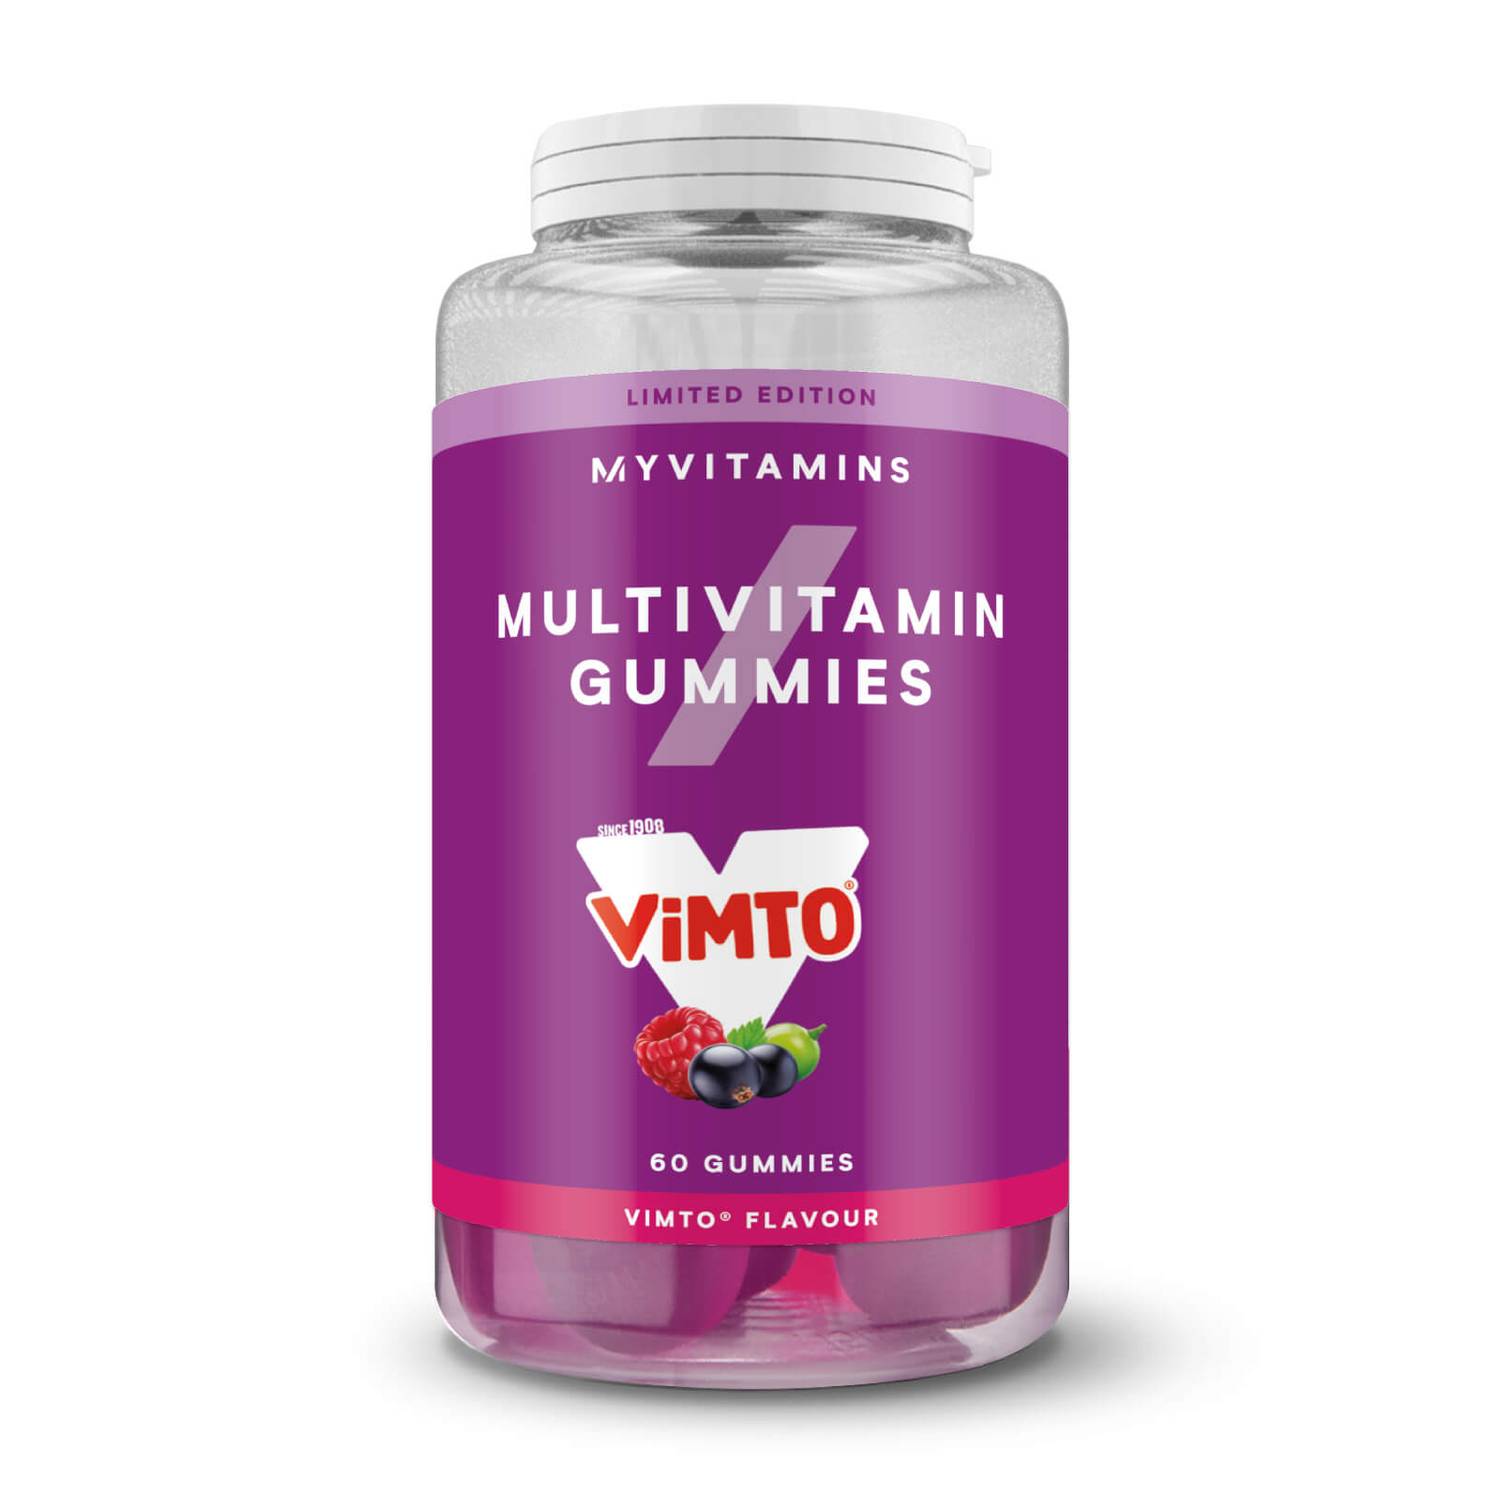 Myprotein Vimto Gummies